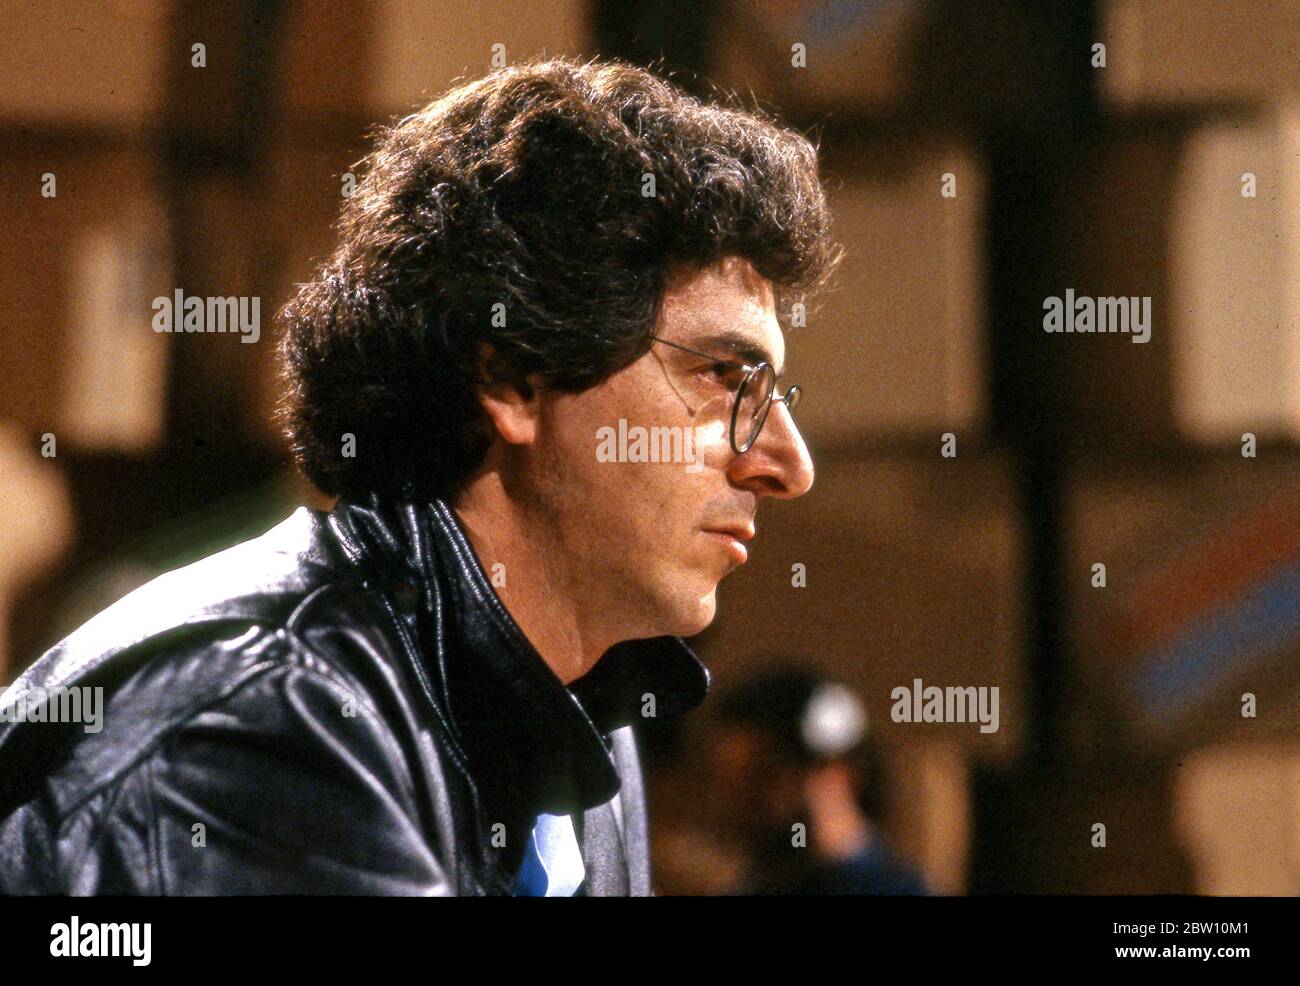 Schauspieler/ Autor/ Regisseur Harold Ramis, der in den 1980er Jahren beim Comic Relief Benefit in Los Angeles auftrat Stockfoto